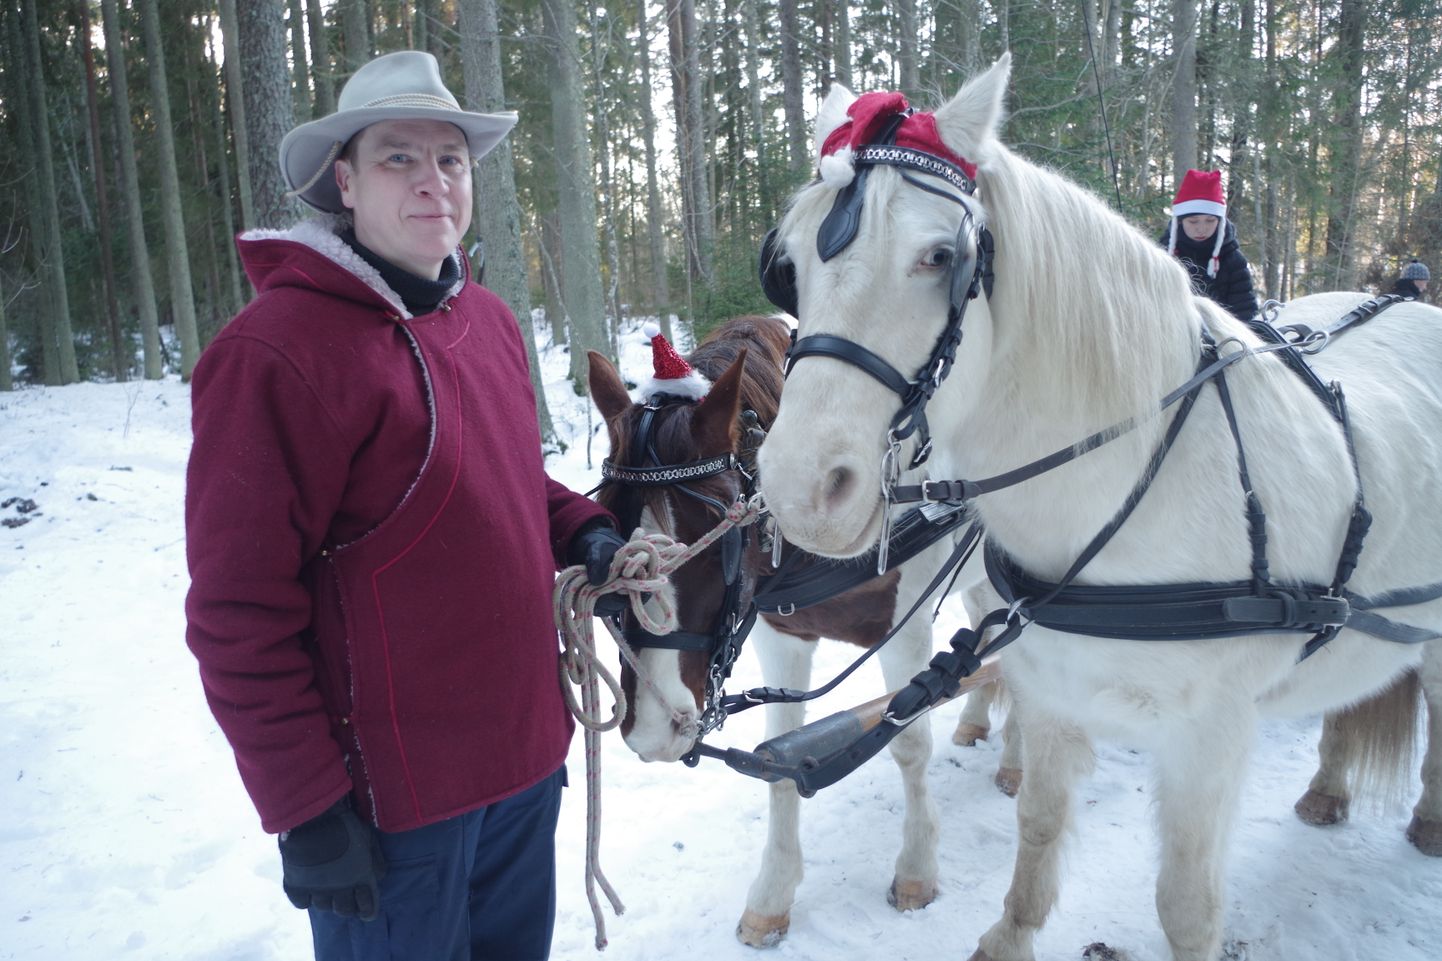 Roy Strider viis jõululaupäeval huvilisi metsa saanisõidule.